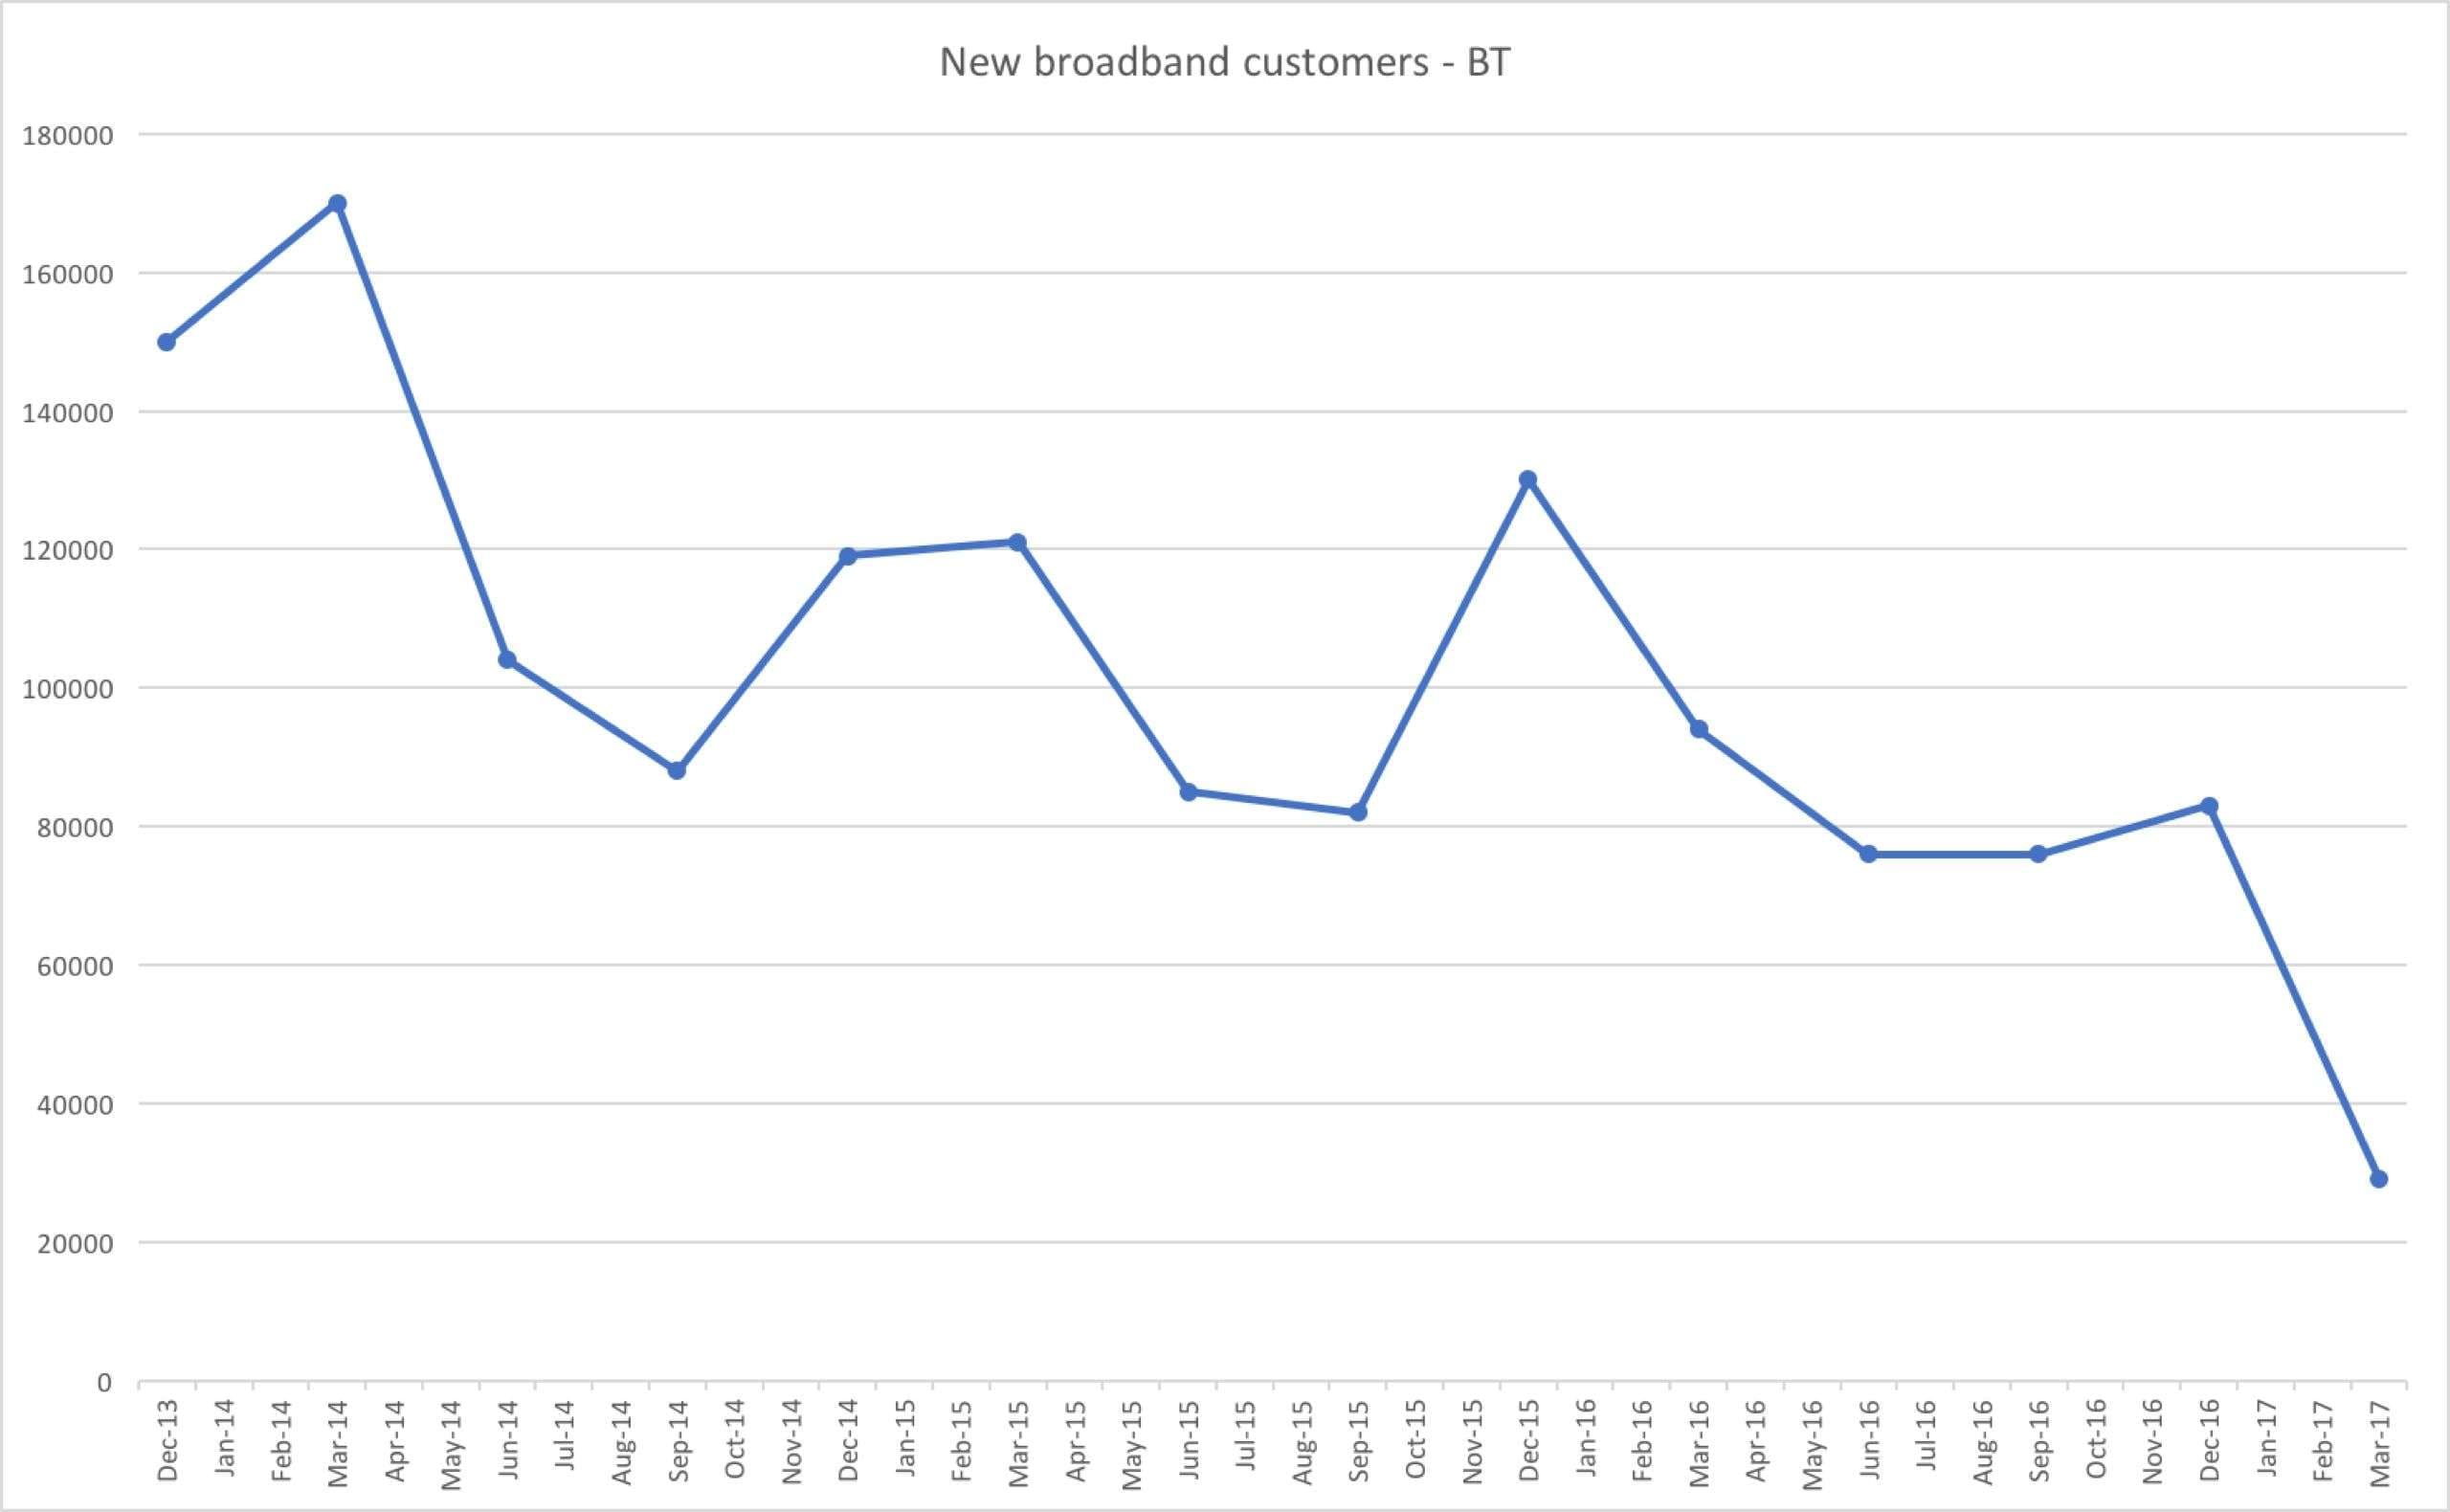 BT new broadband customers